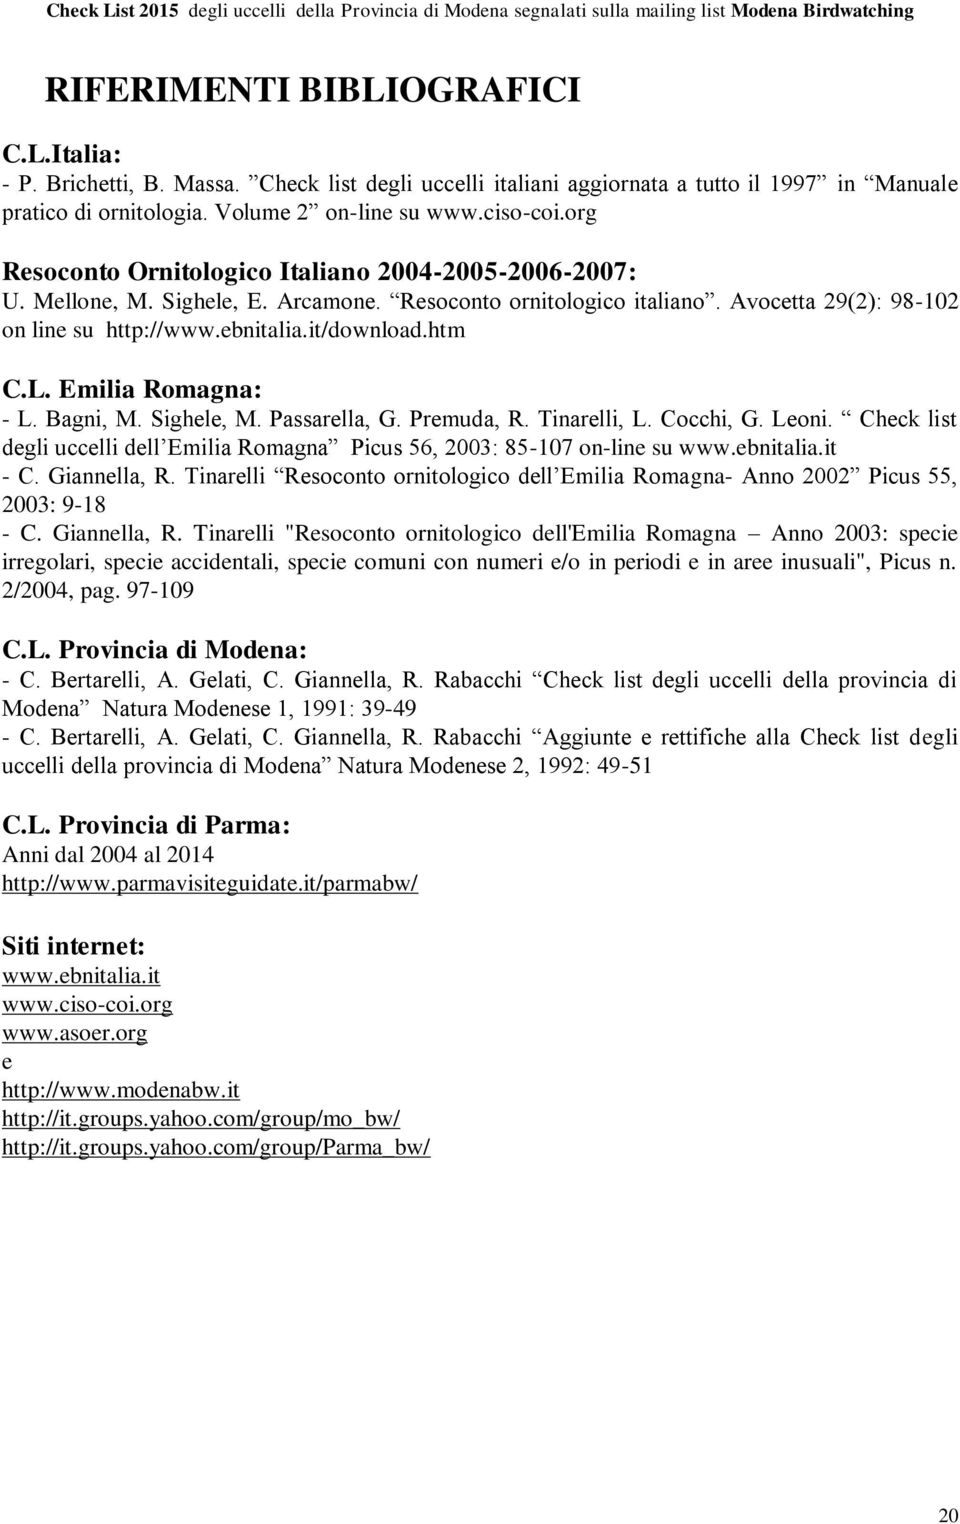 L. Emilia Romagna: - L. Bagni, M. Sighele, M. Passarella, G. Premuda, R. Tinarelli, L. Cocchi, G. Leoni. Check list degli uccelli dell Emilia Romagna Picus 56, 2003: 85-107 on-line su www.ebnitalia.